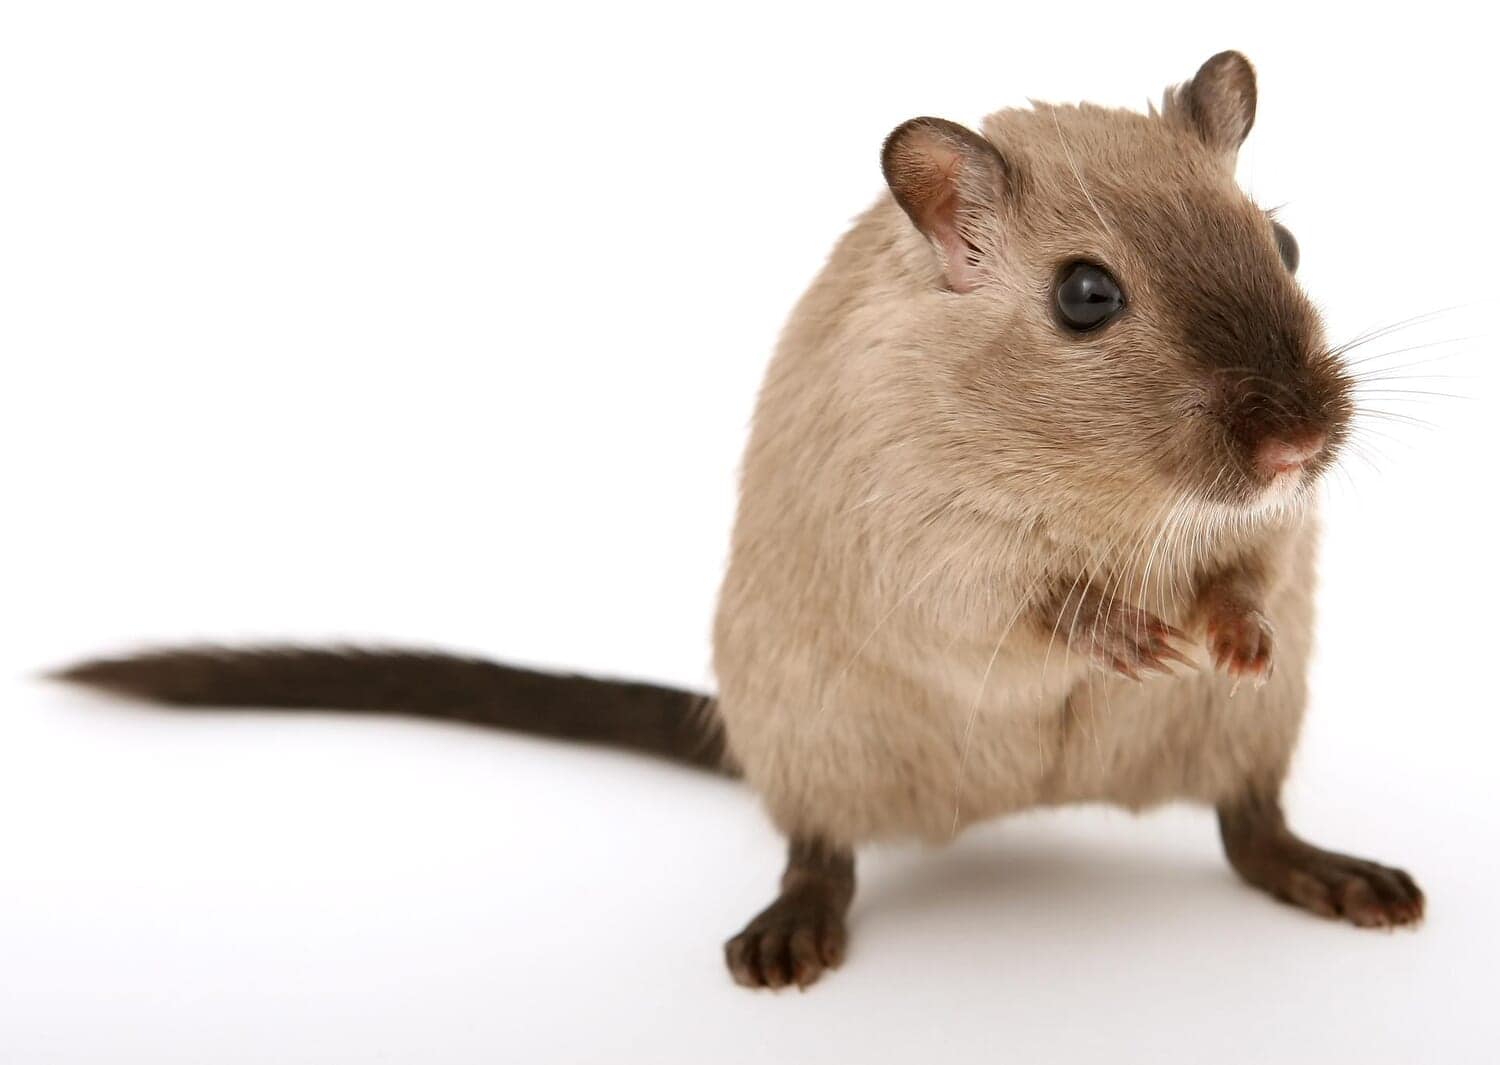 年老いたマウスから若いマウスに輸血したら老化してしまったという驚きの研究結果